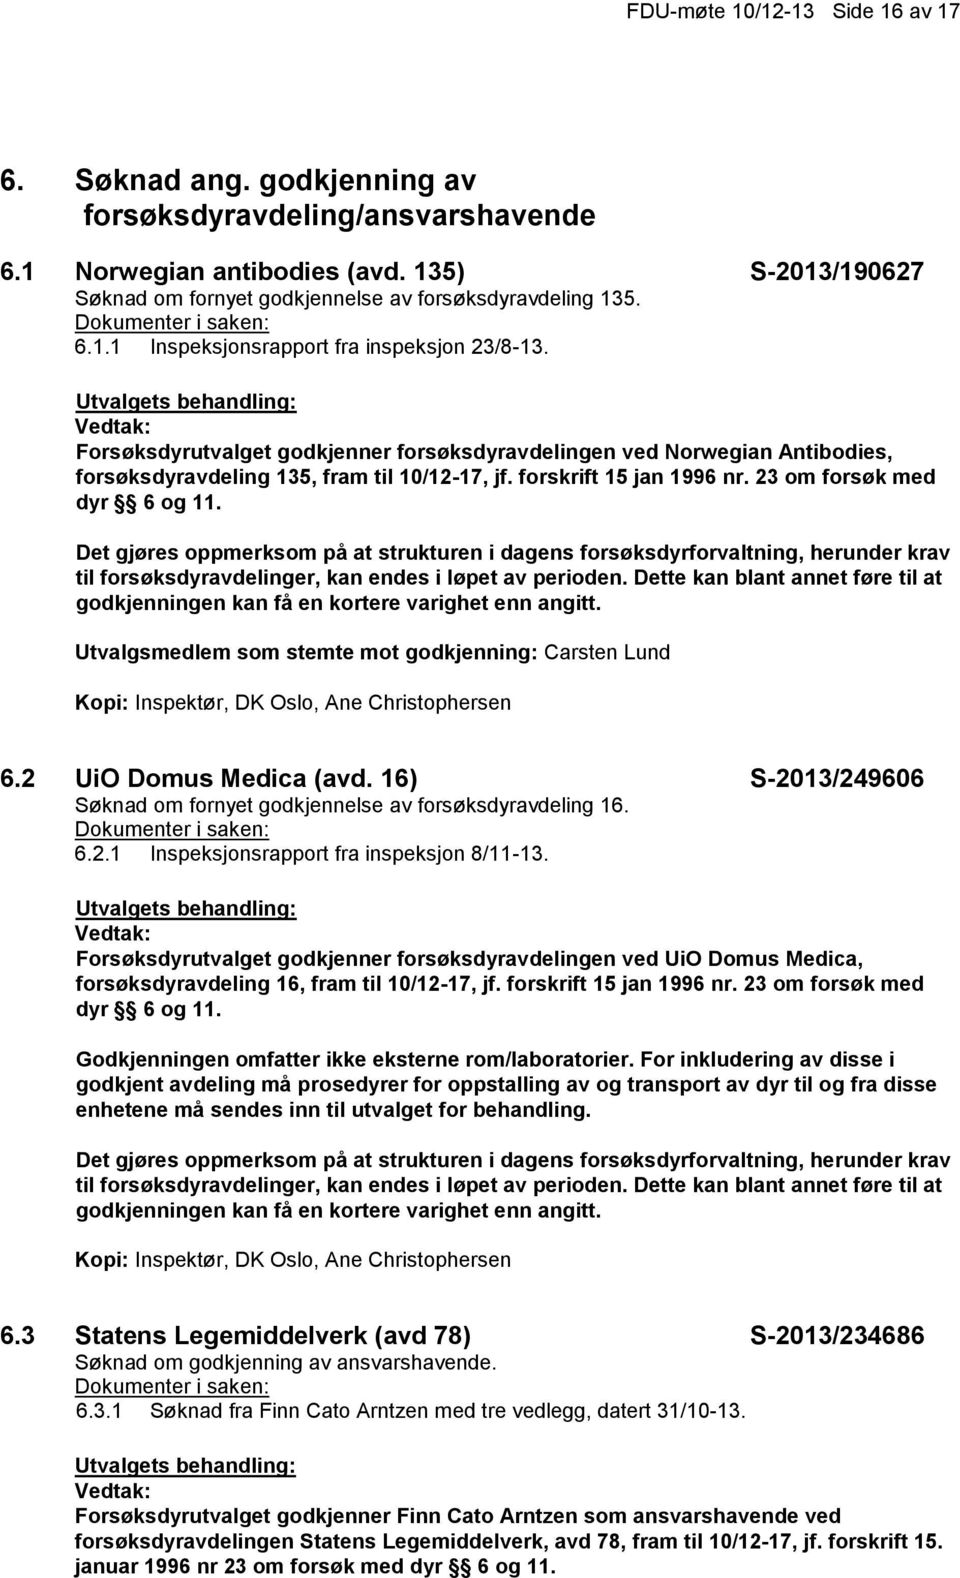 Forsøksdyrutvalget godkjenner forsøksdyravdelingen ved Norwegian Antibodies, forsøksdyravdeling 135, fram til 10/12-17, jf. forskrift 15 jan 1996 nr. 23 om forsøk med dyr 6 og 11.